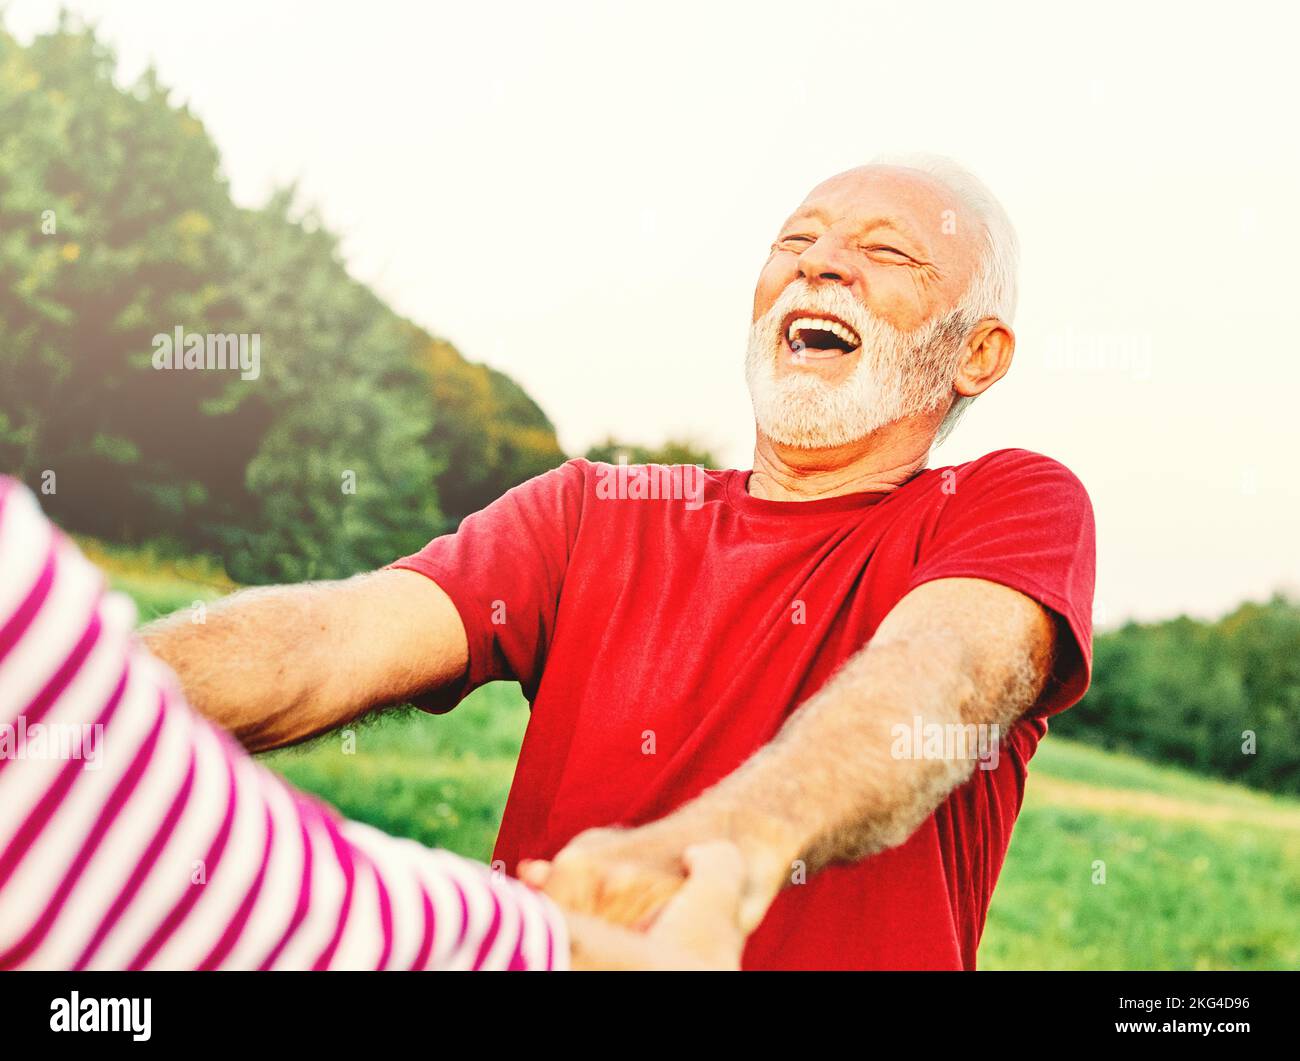 donna uomo outdoor coppia anziano felice lifestyle pensione insieme sorridente amore danza divertimento gioco attivo vitalità natura matura Foto Stock